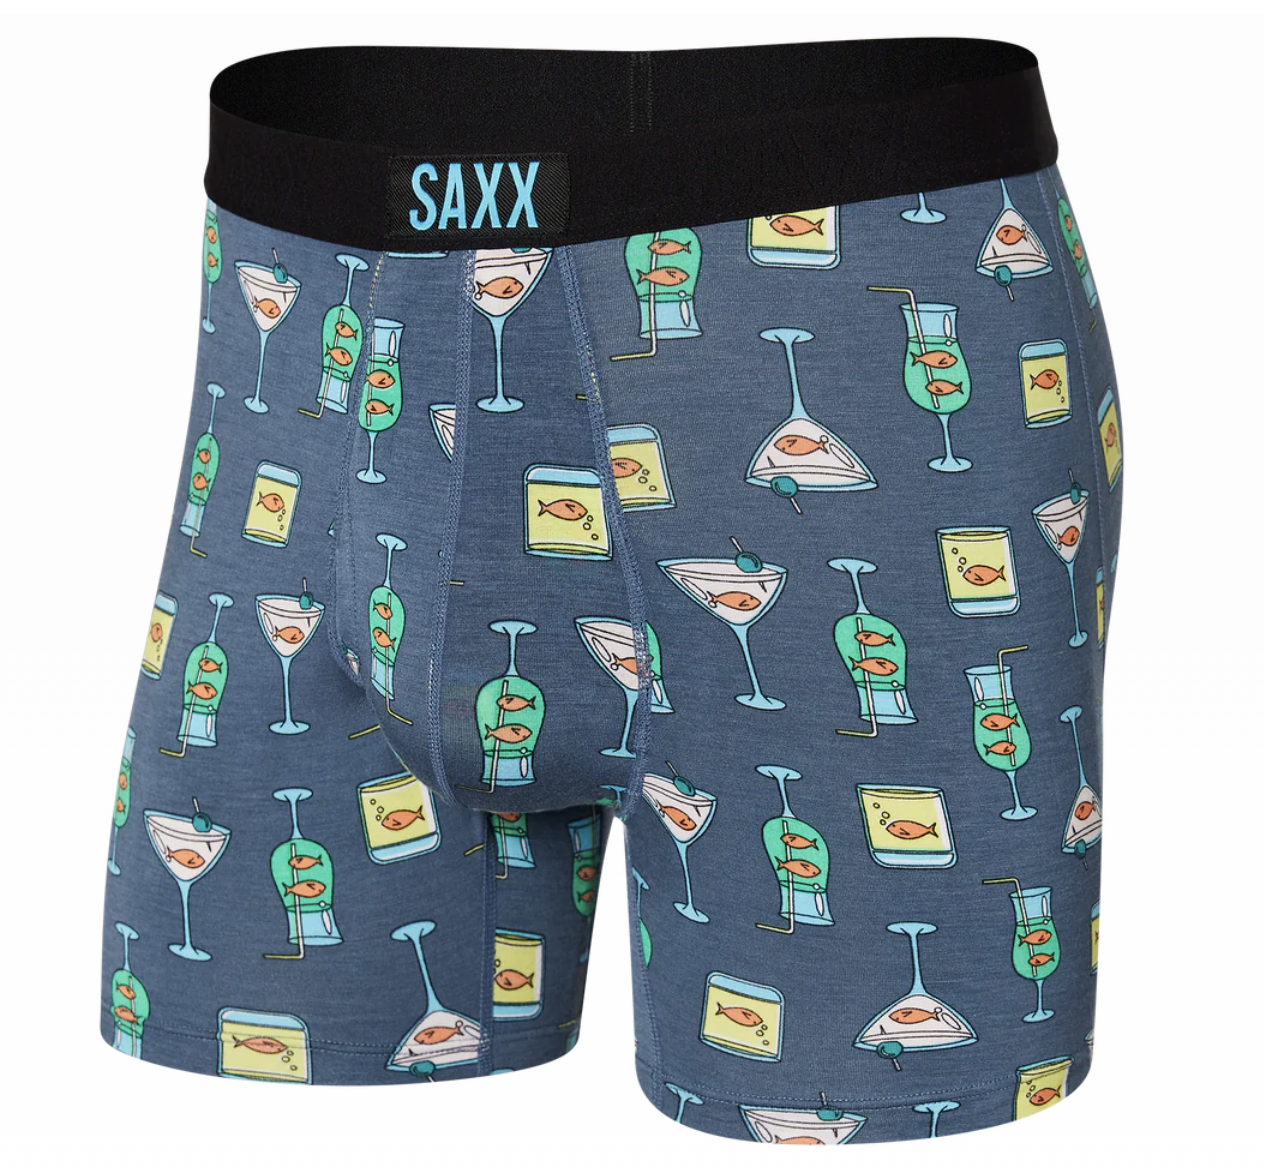 SAXX QUEST Box Design Underwear